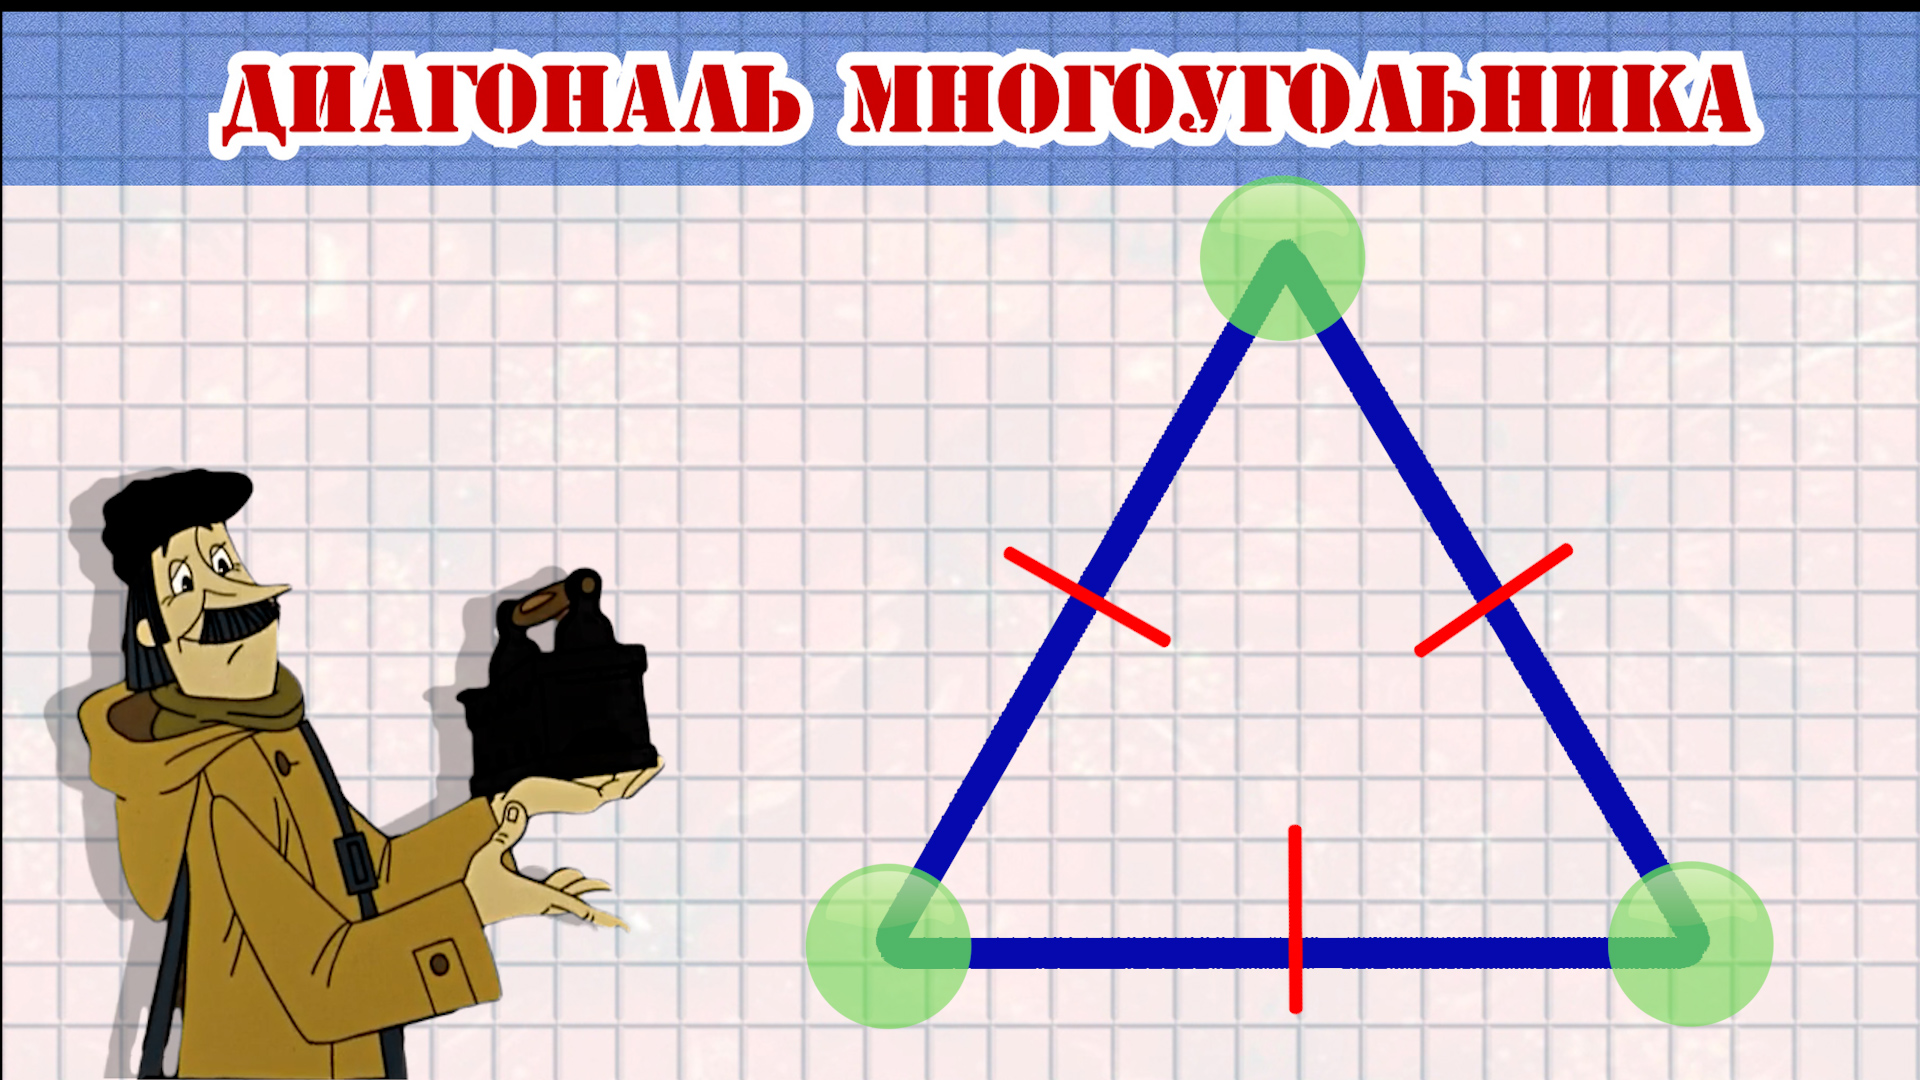 Диагональ многоугольника.mp4